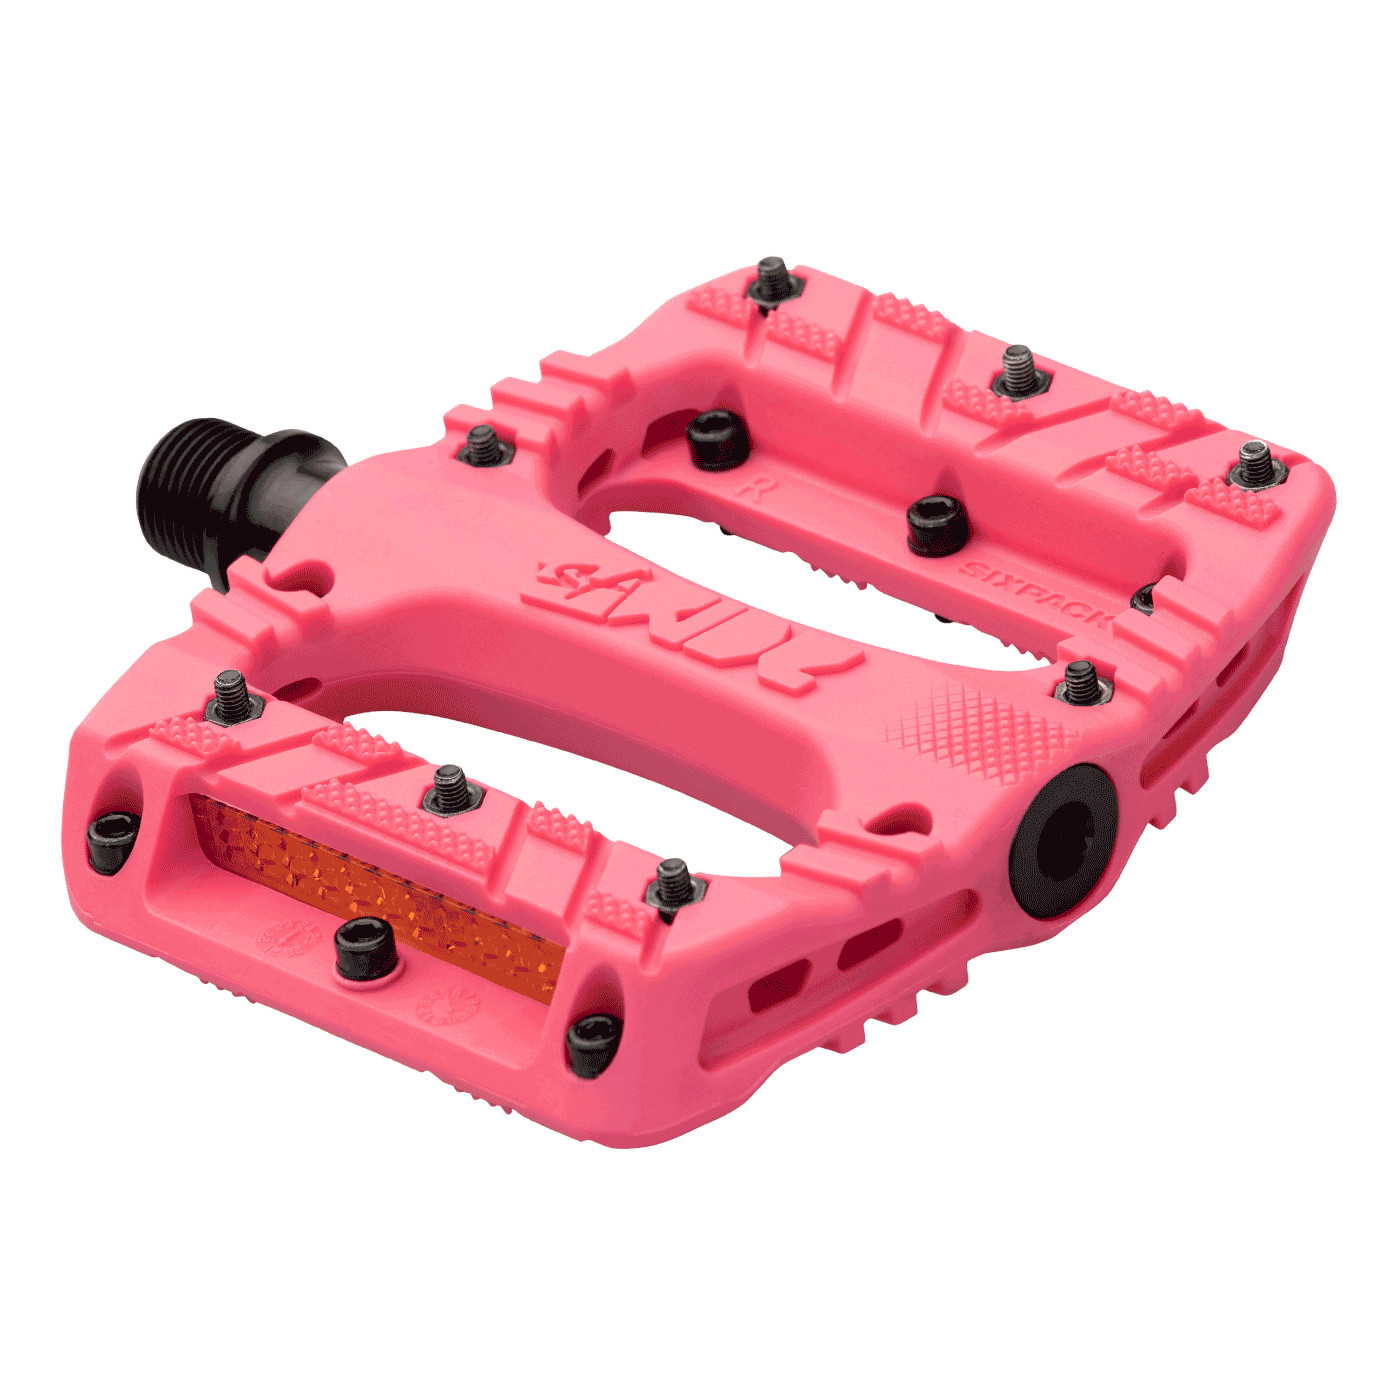 Produktbild von Sixpack 1st Ride Plattformpedale - Raspberry pink